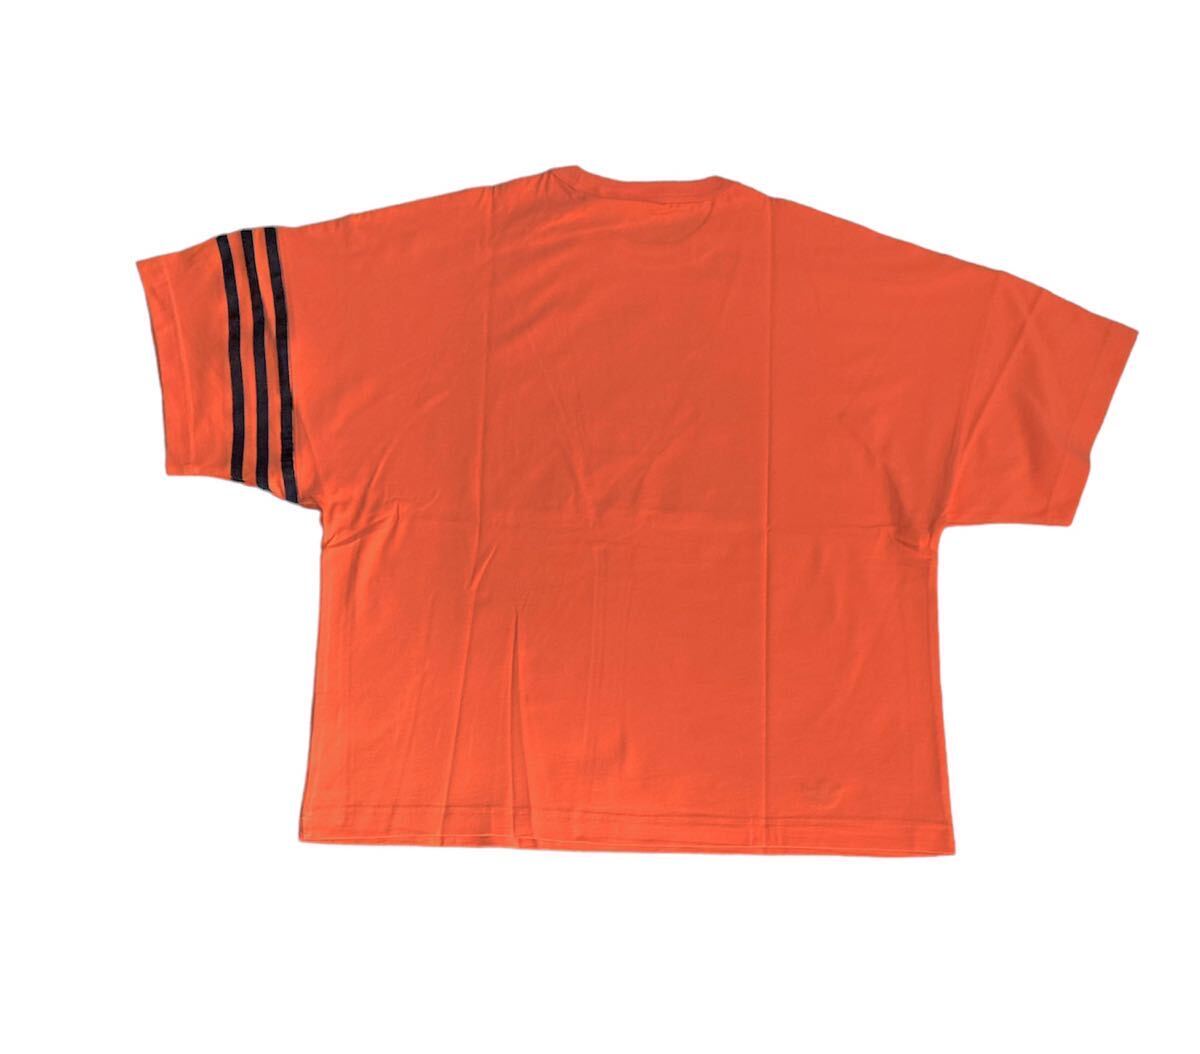  новый товар стандартный товар [adidas Originals] Adidas Originals Adi цвет Neuclassics короткий рукав футболка orange *L*